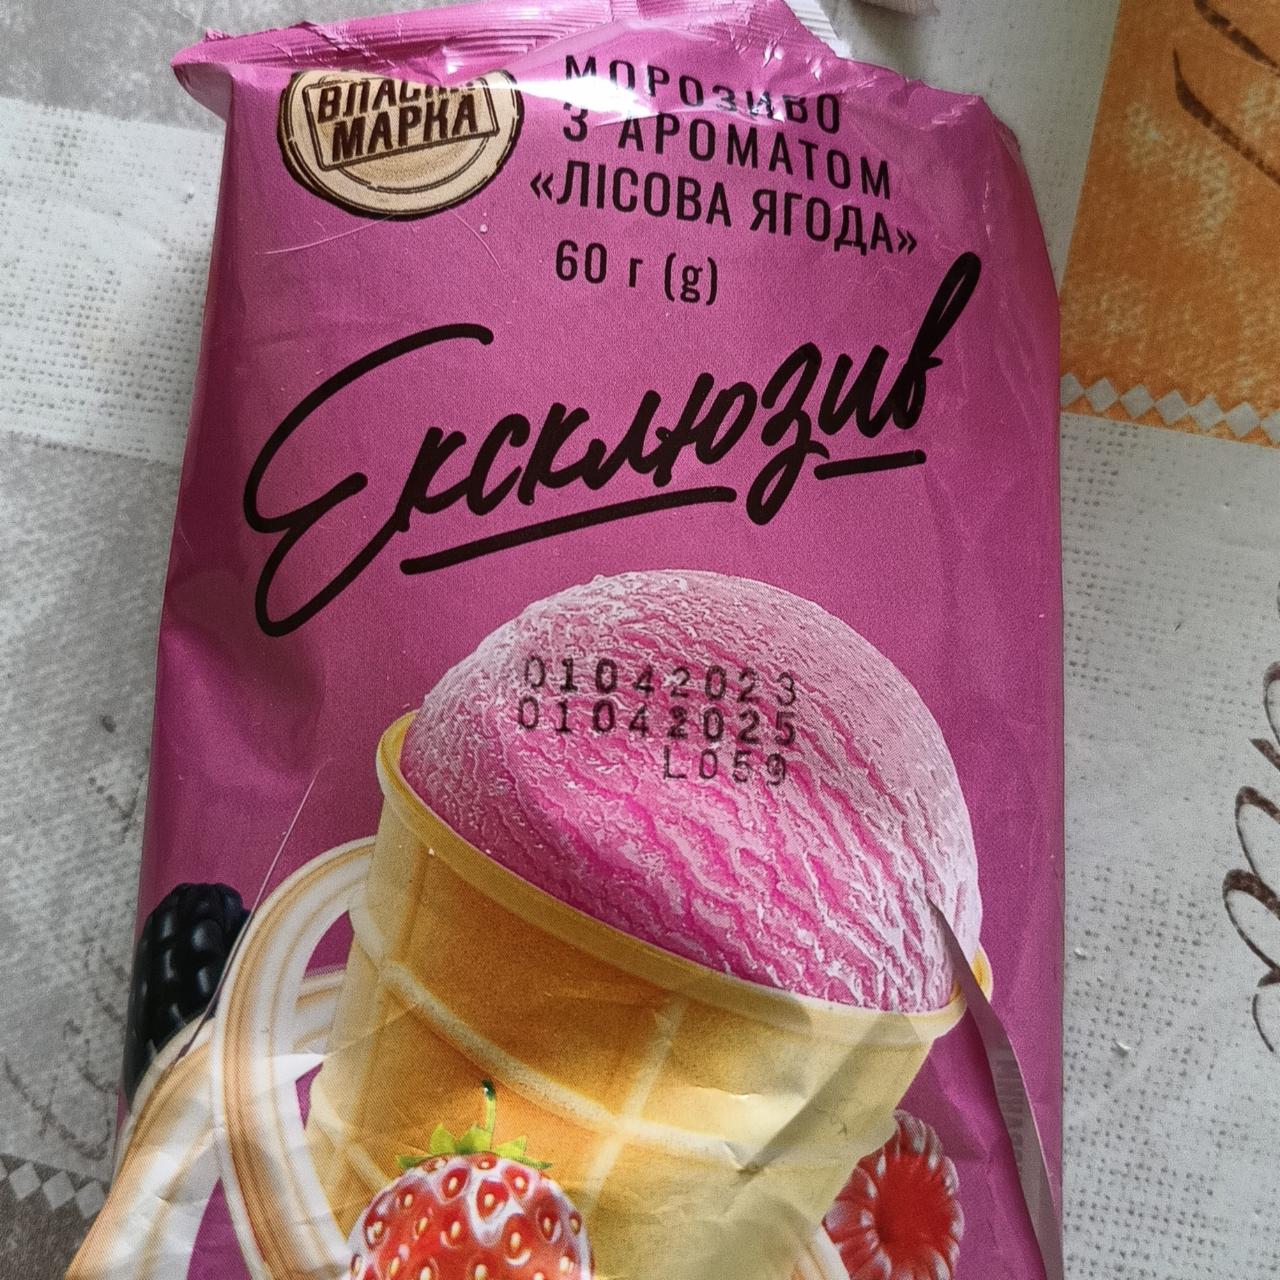 Фото - Морозиво ексклюзив з ароматом Лісова ягода Власна марка